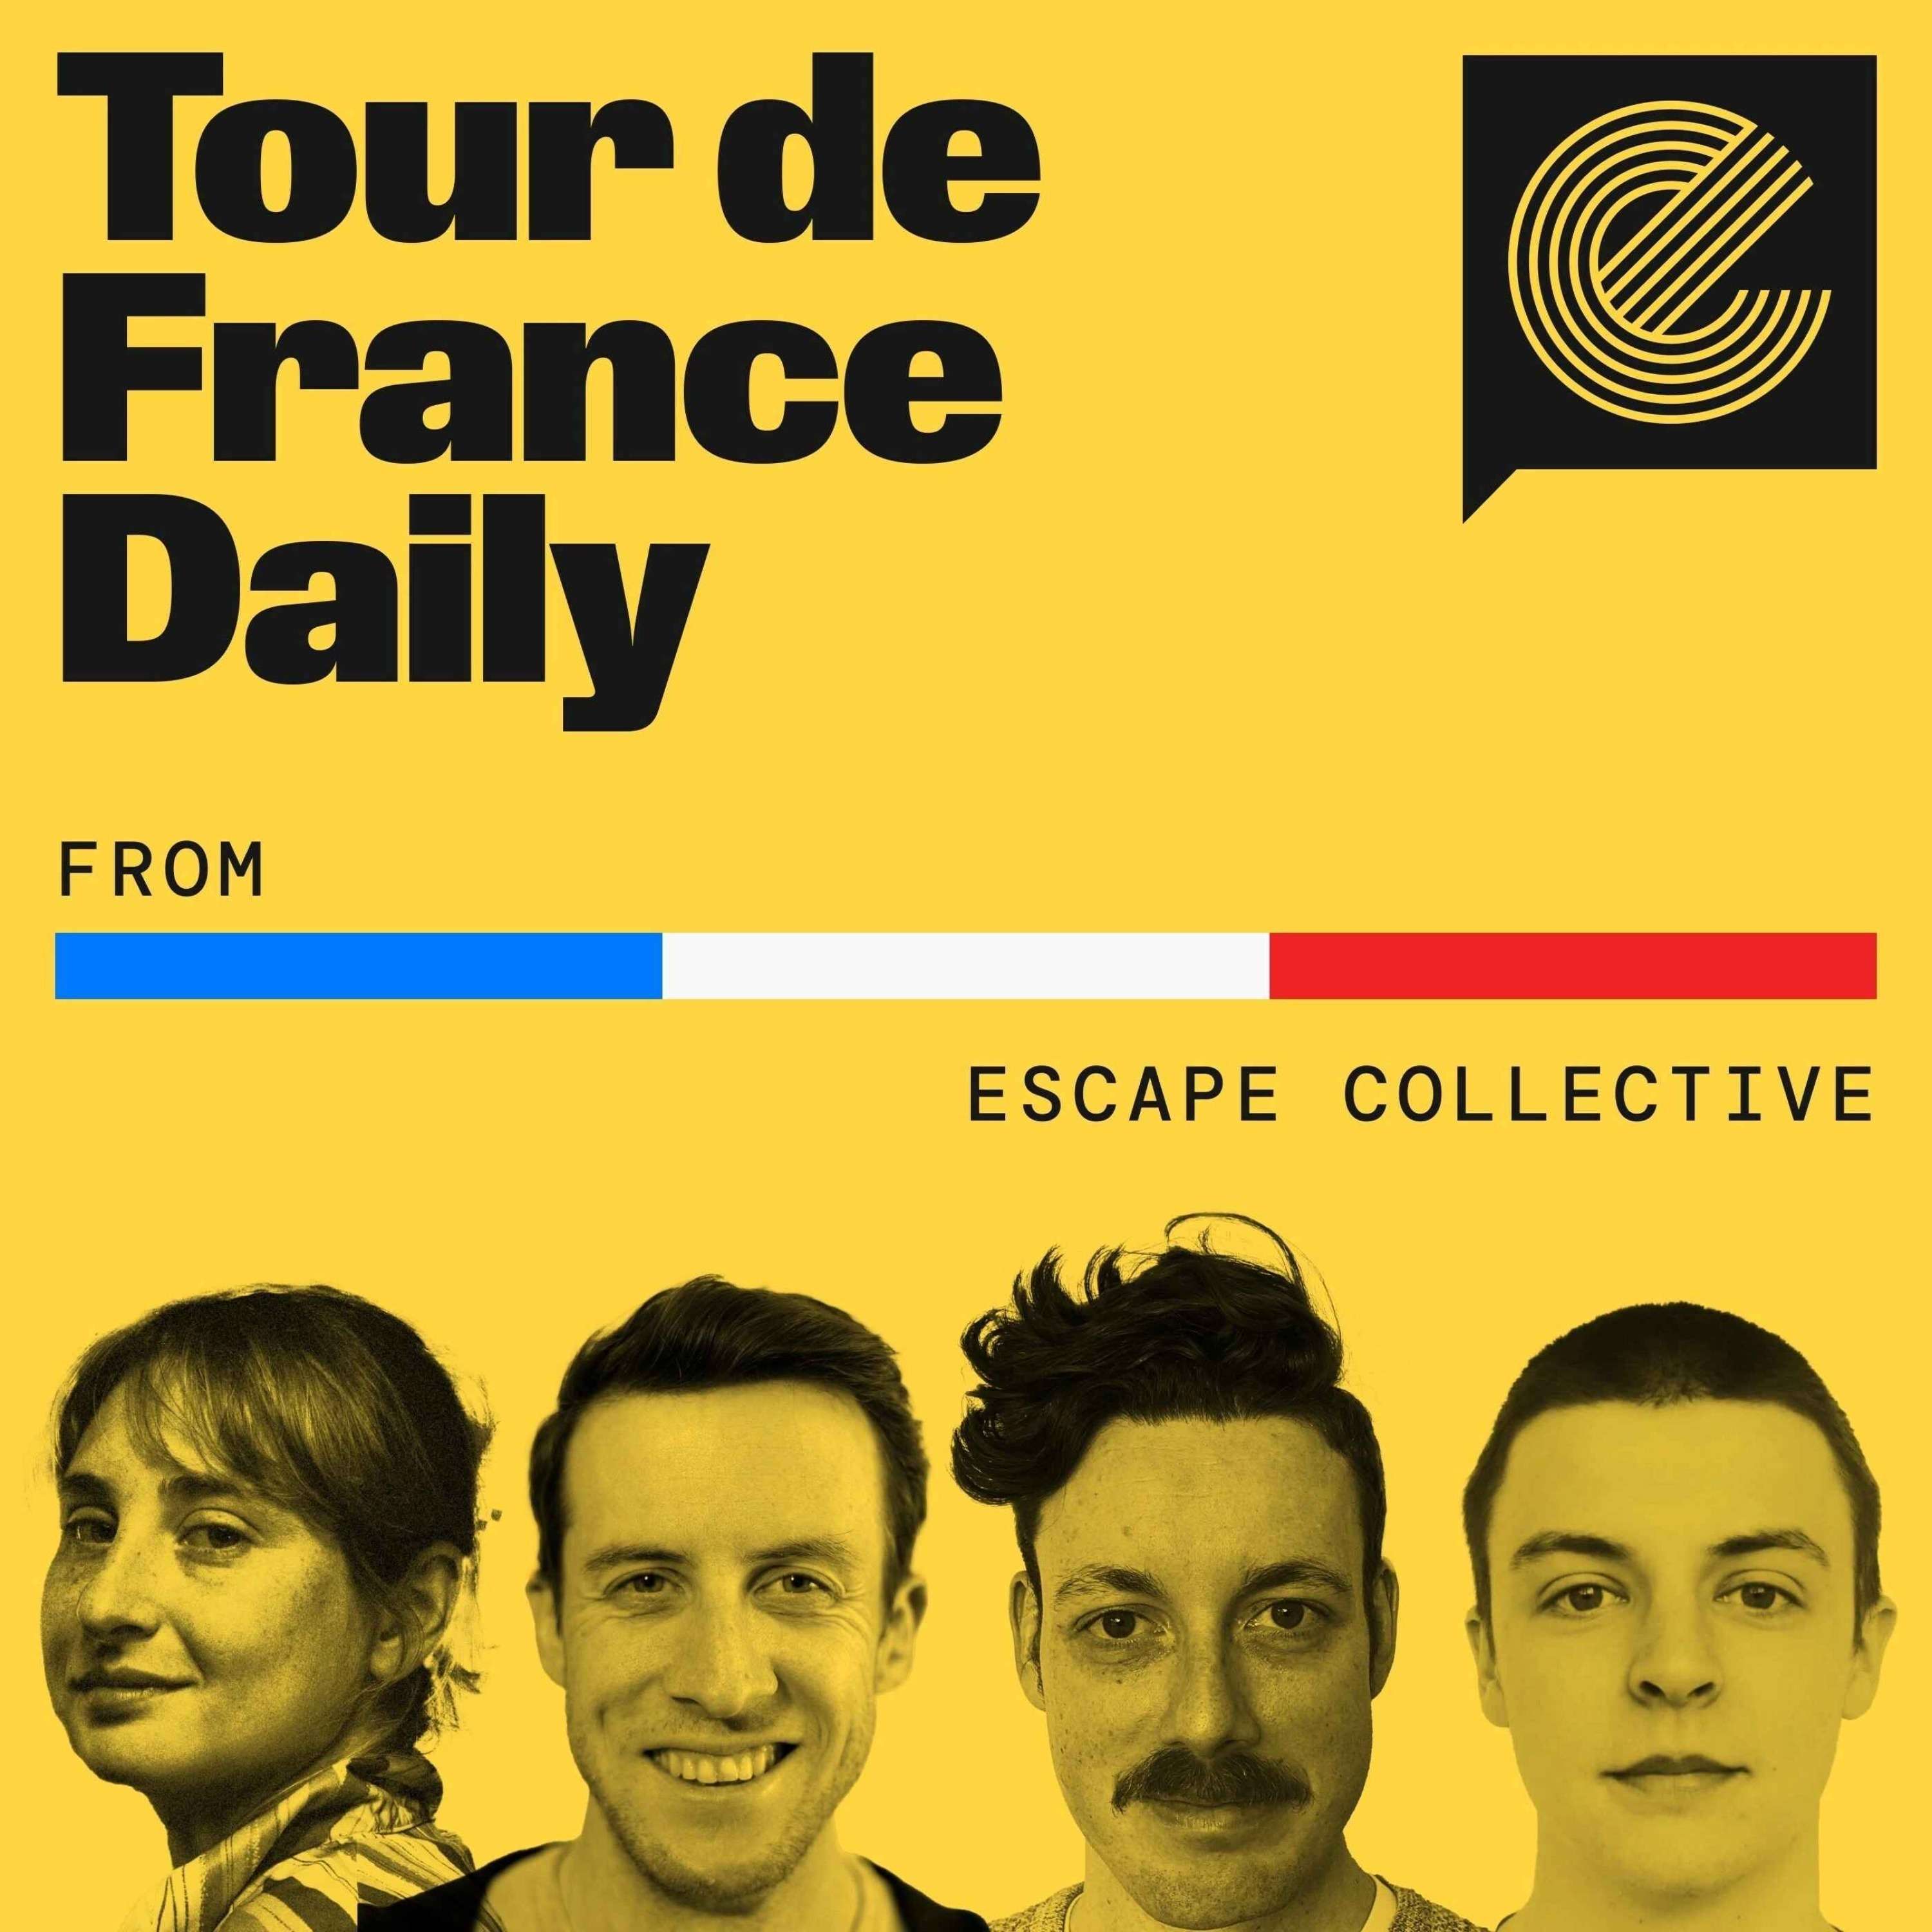 Tour de France Daily: On the eve of Le Tour